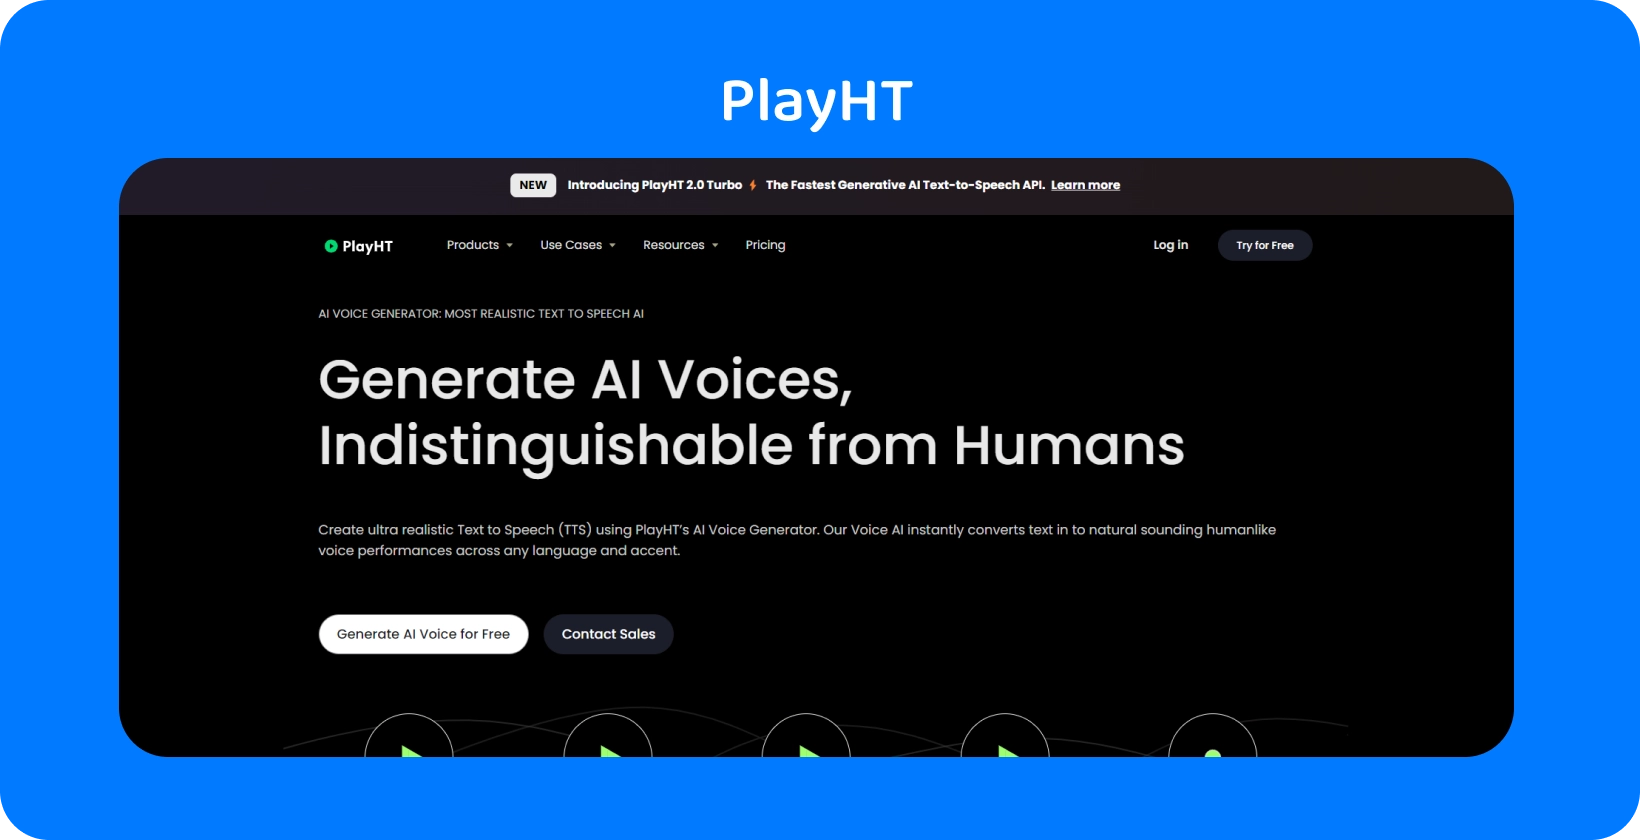 O PlayHT oferece vozes geradas por AI quase indistinguíveis da fala humana para necessidades de conversão de texto em fala.